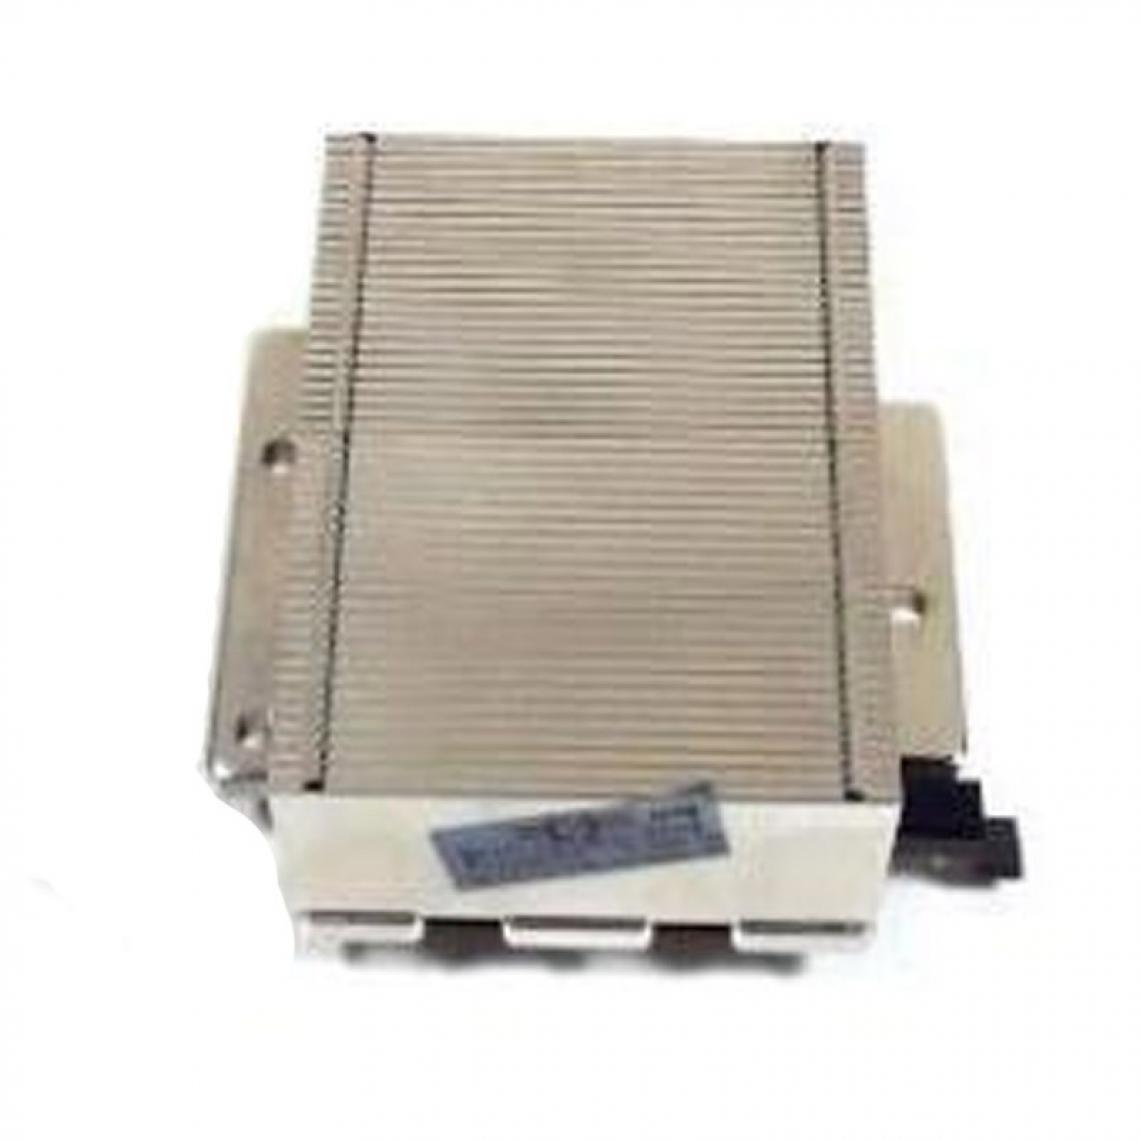 Hp - Dissipateur Processeur HP 349931-104 366864-001 CPU Socket 604 Proliant DL360 G4 - Dissipateur processeur